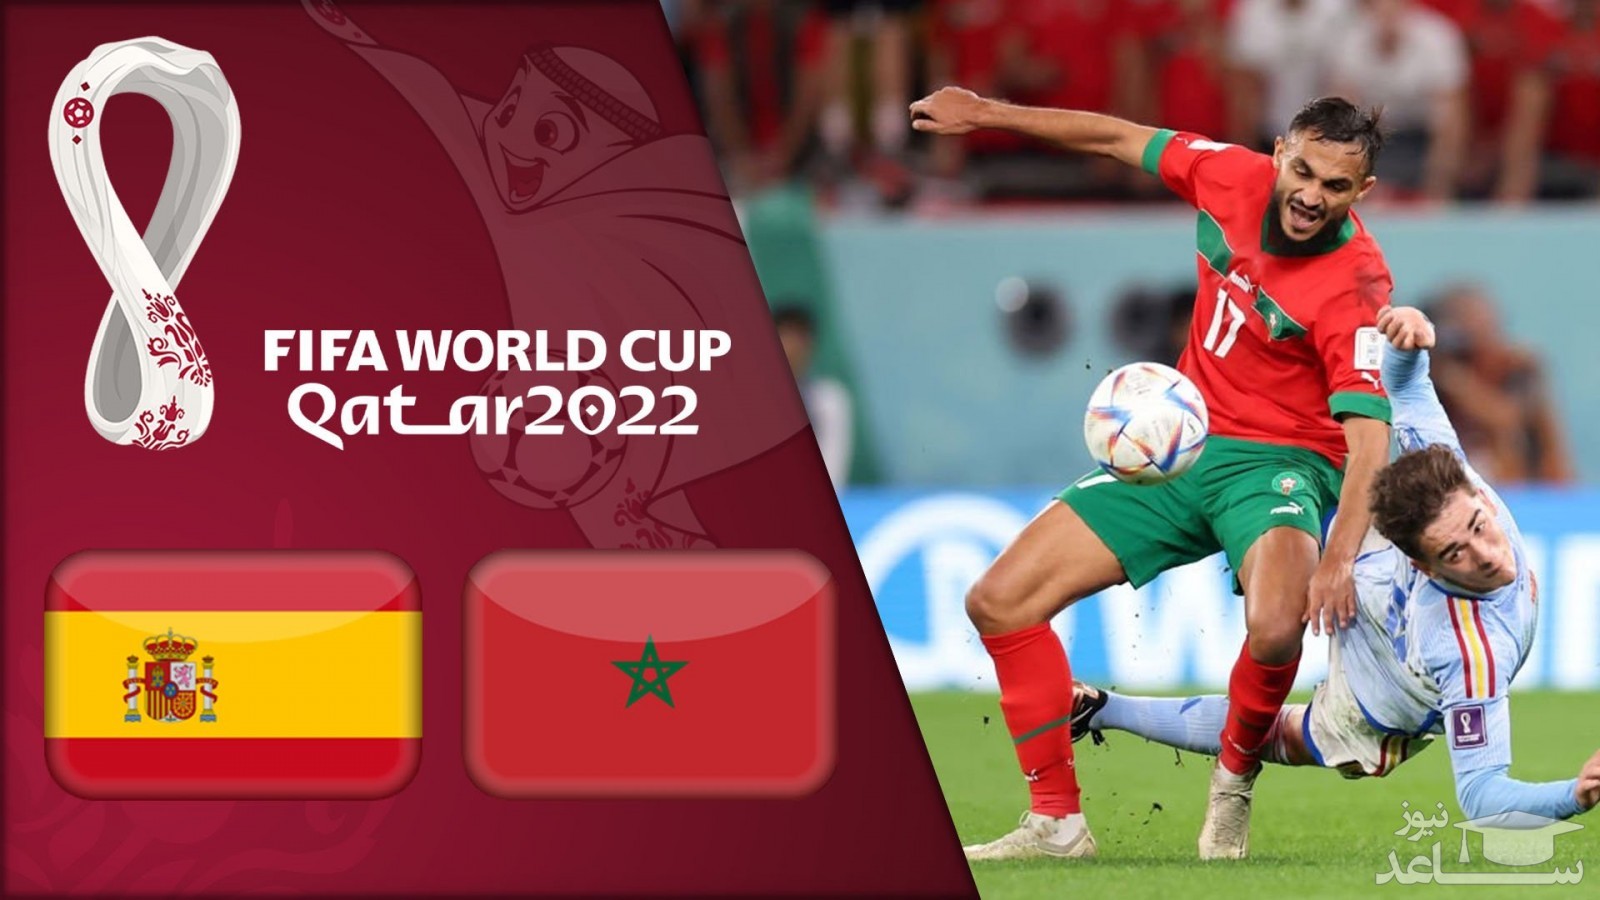 خلاصه بازی پرهیجان مراکش - اسپانیا + ویدئو